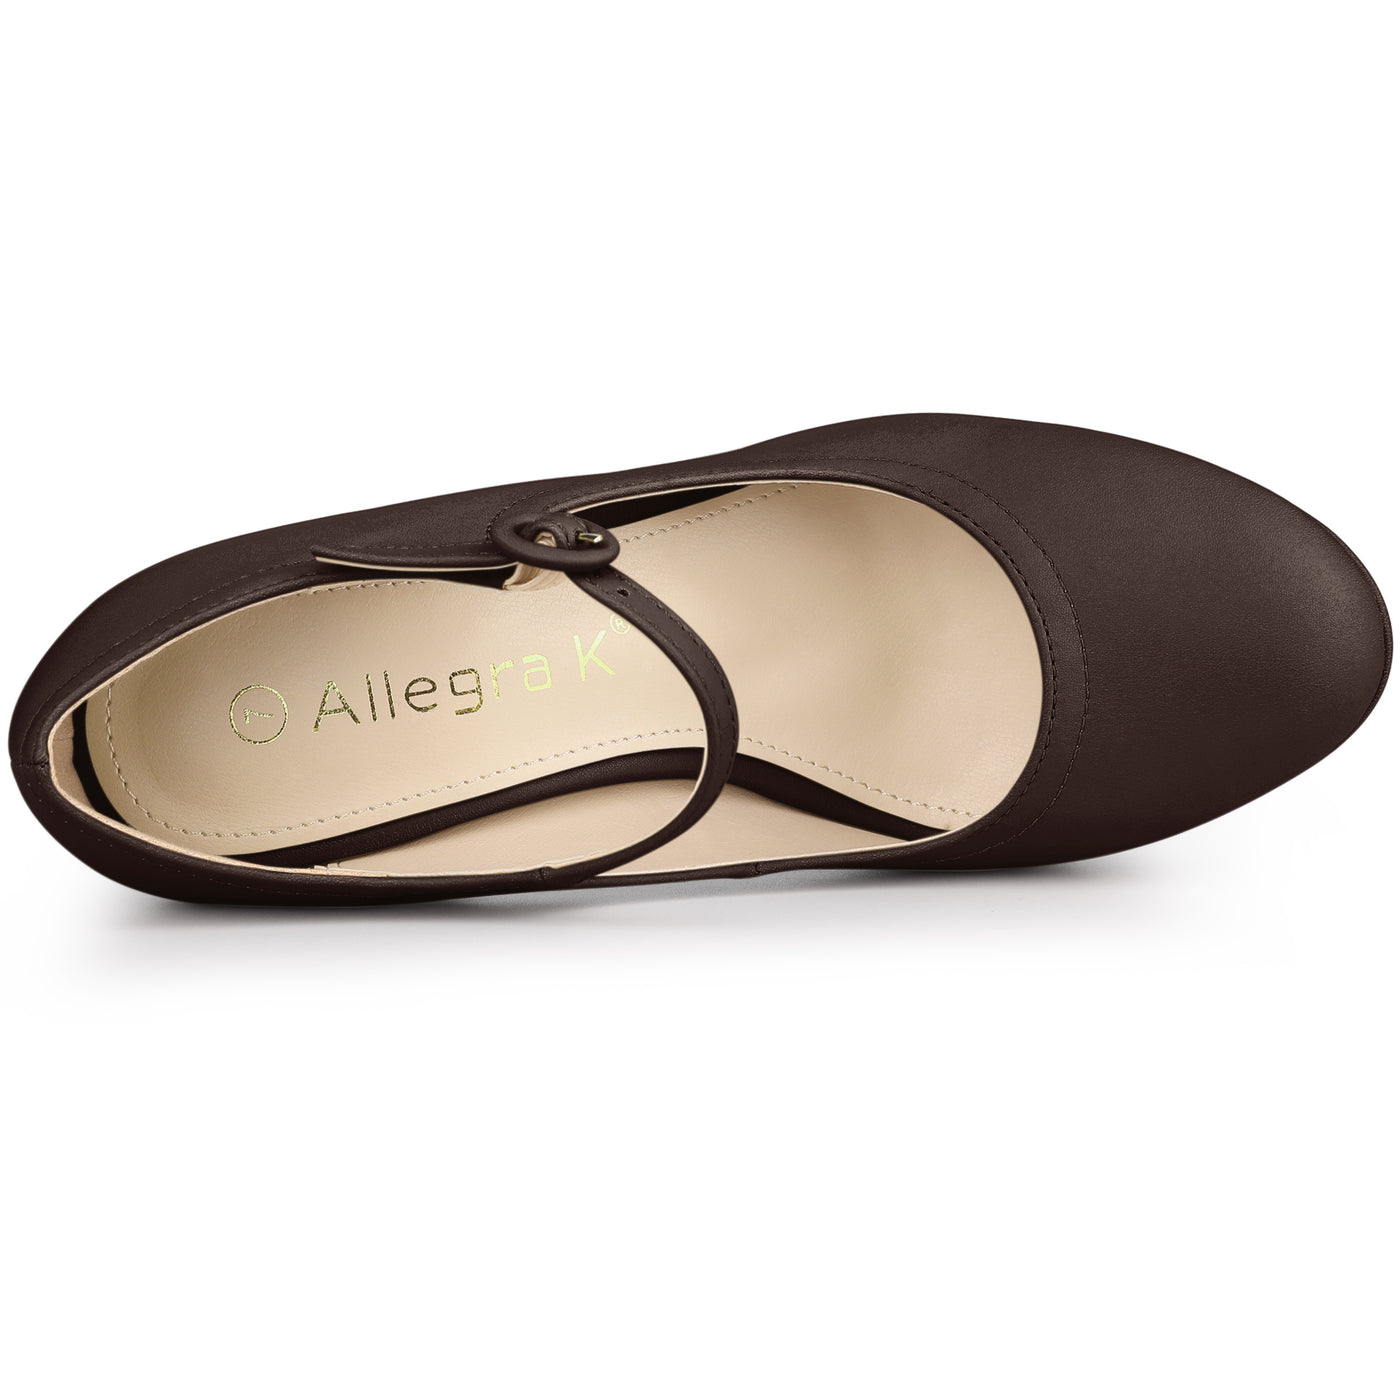 Allegra K Platform Round Toe Ankle Strap Mary Jane Stiletto Heel Pumps